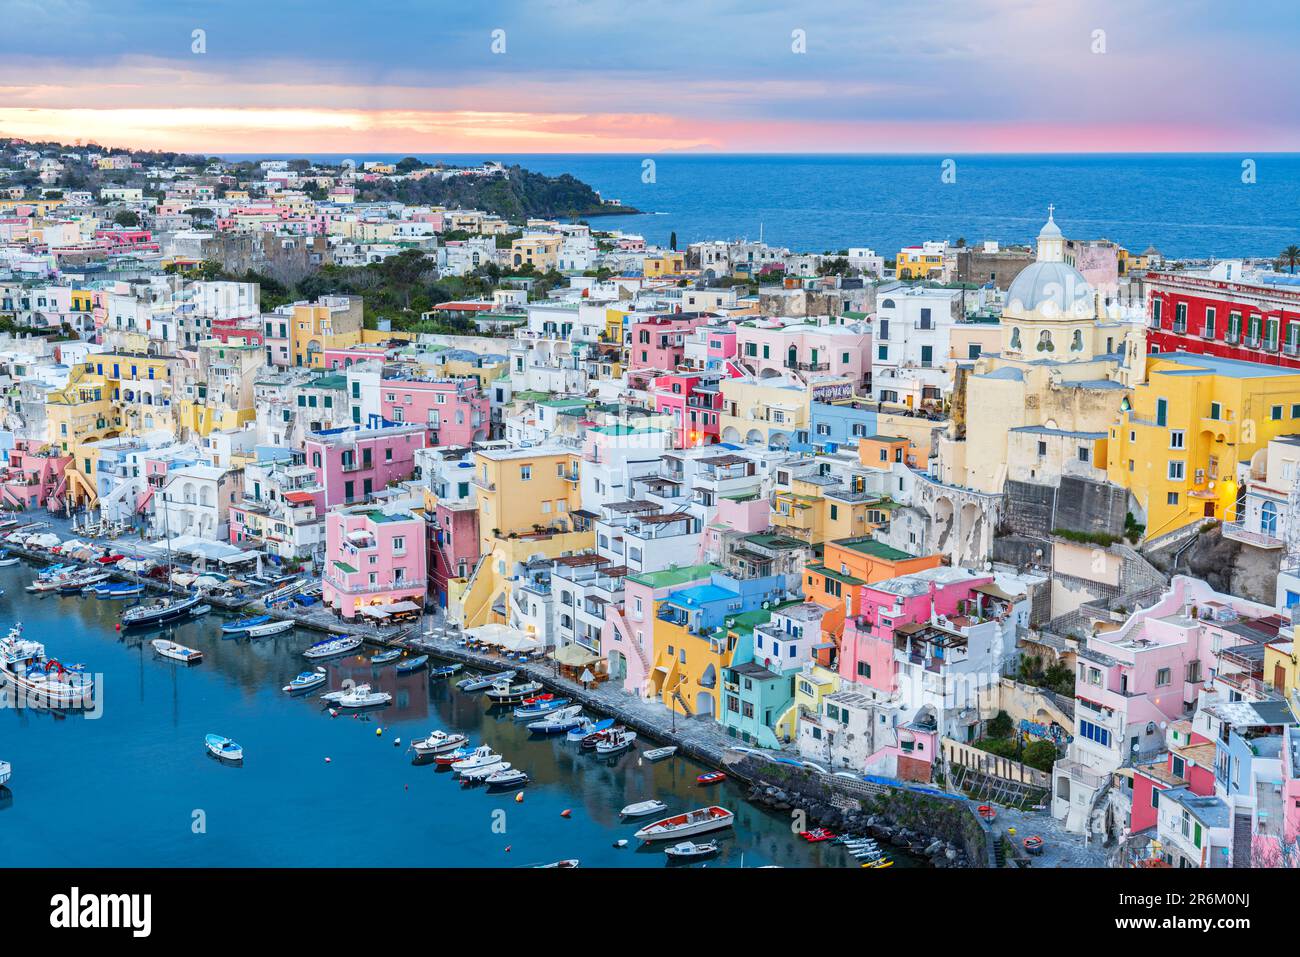 Erhöhte Aussicht auf das farbenfrohe italienische Fischerdorf Marina Corricella in der Dämmerung, die Insel Procida und das Tyrrhenische Meer Stockfoto